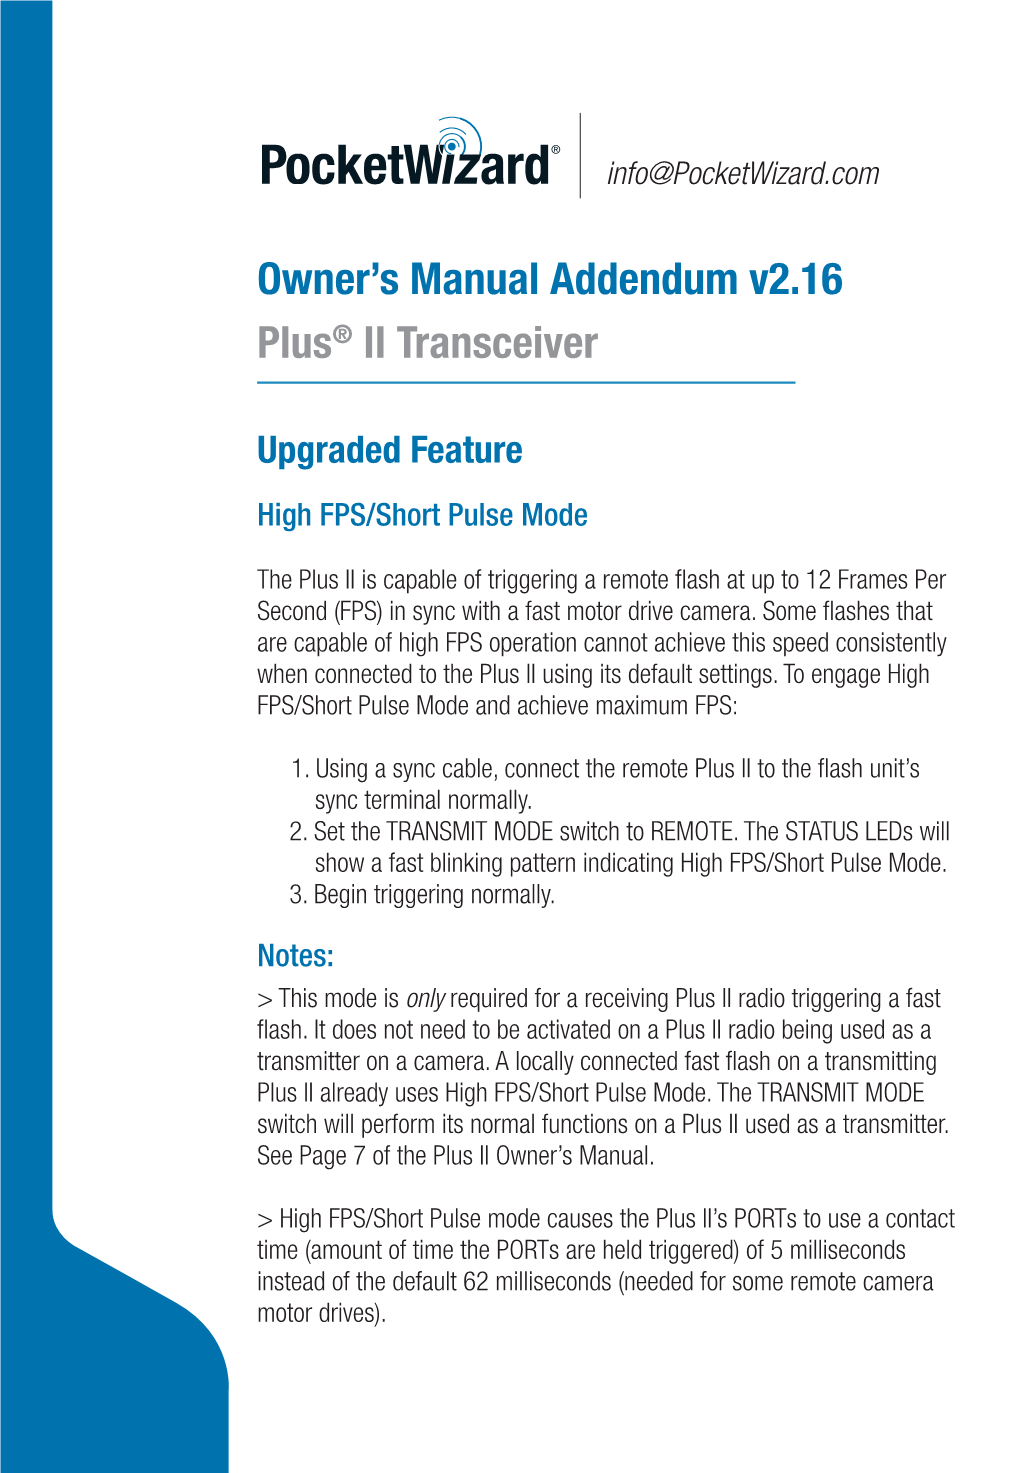 Plus® II Transceiver Owner's Manual Addendum V2.16